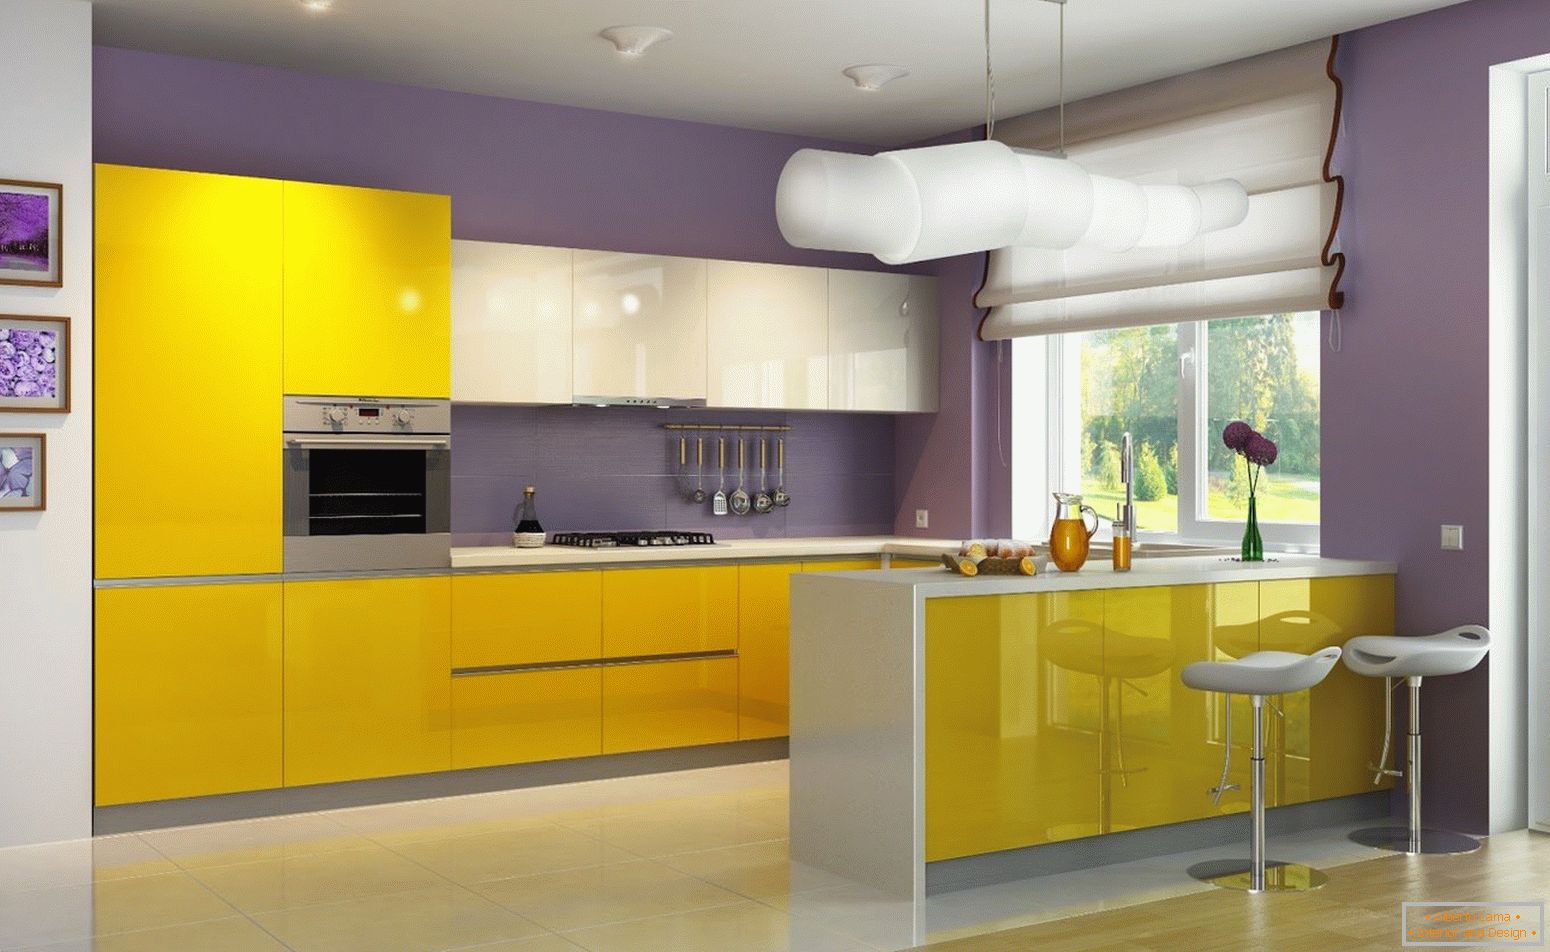 Die Kombination der gelben und purpurroten Blumen in der Küche